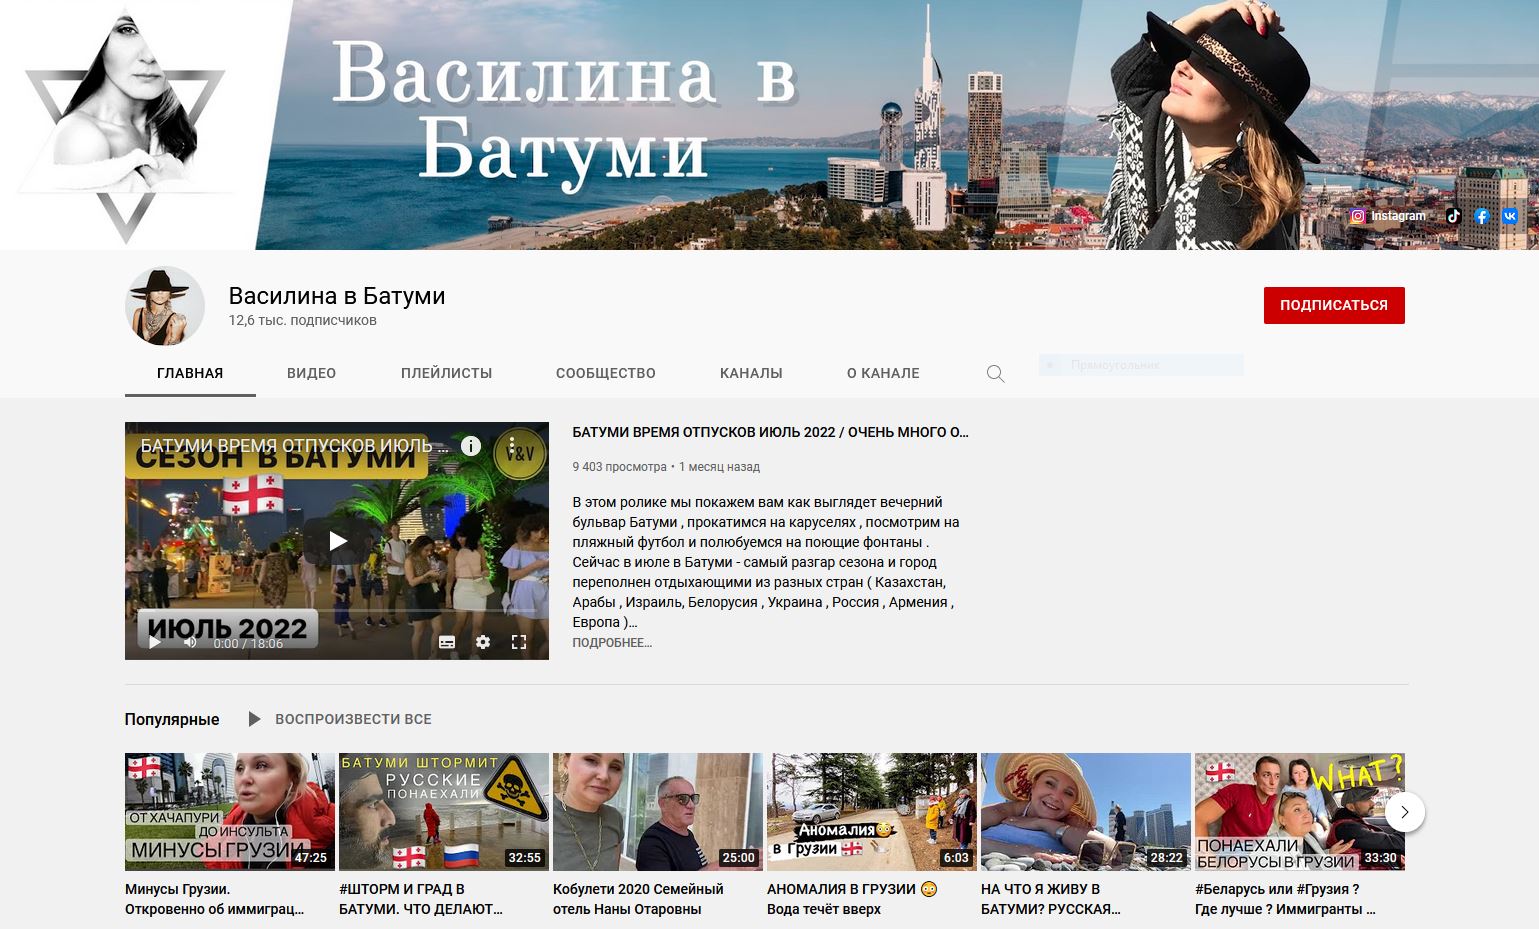 Youtube channel: Vasilina in Batumi